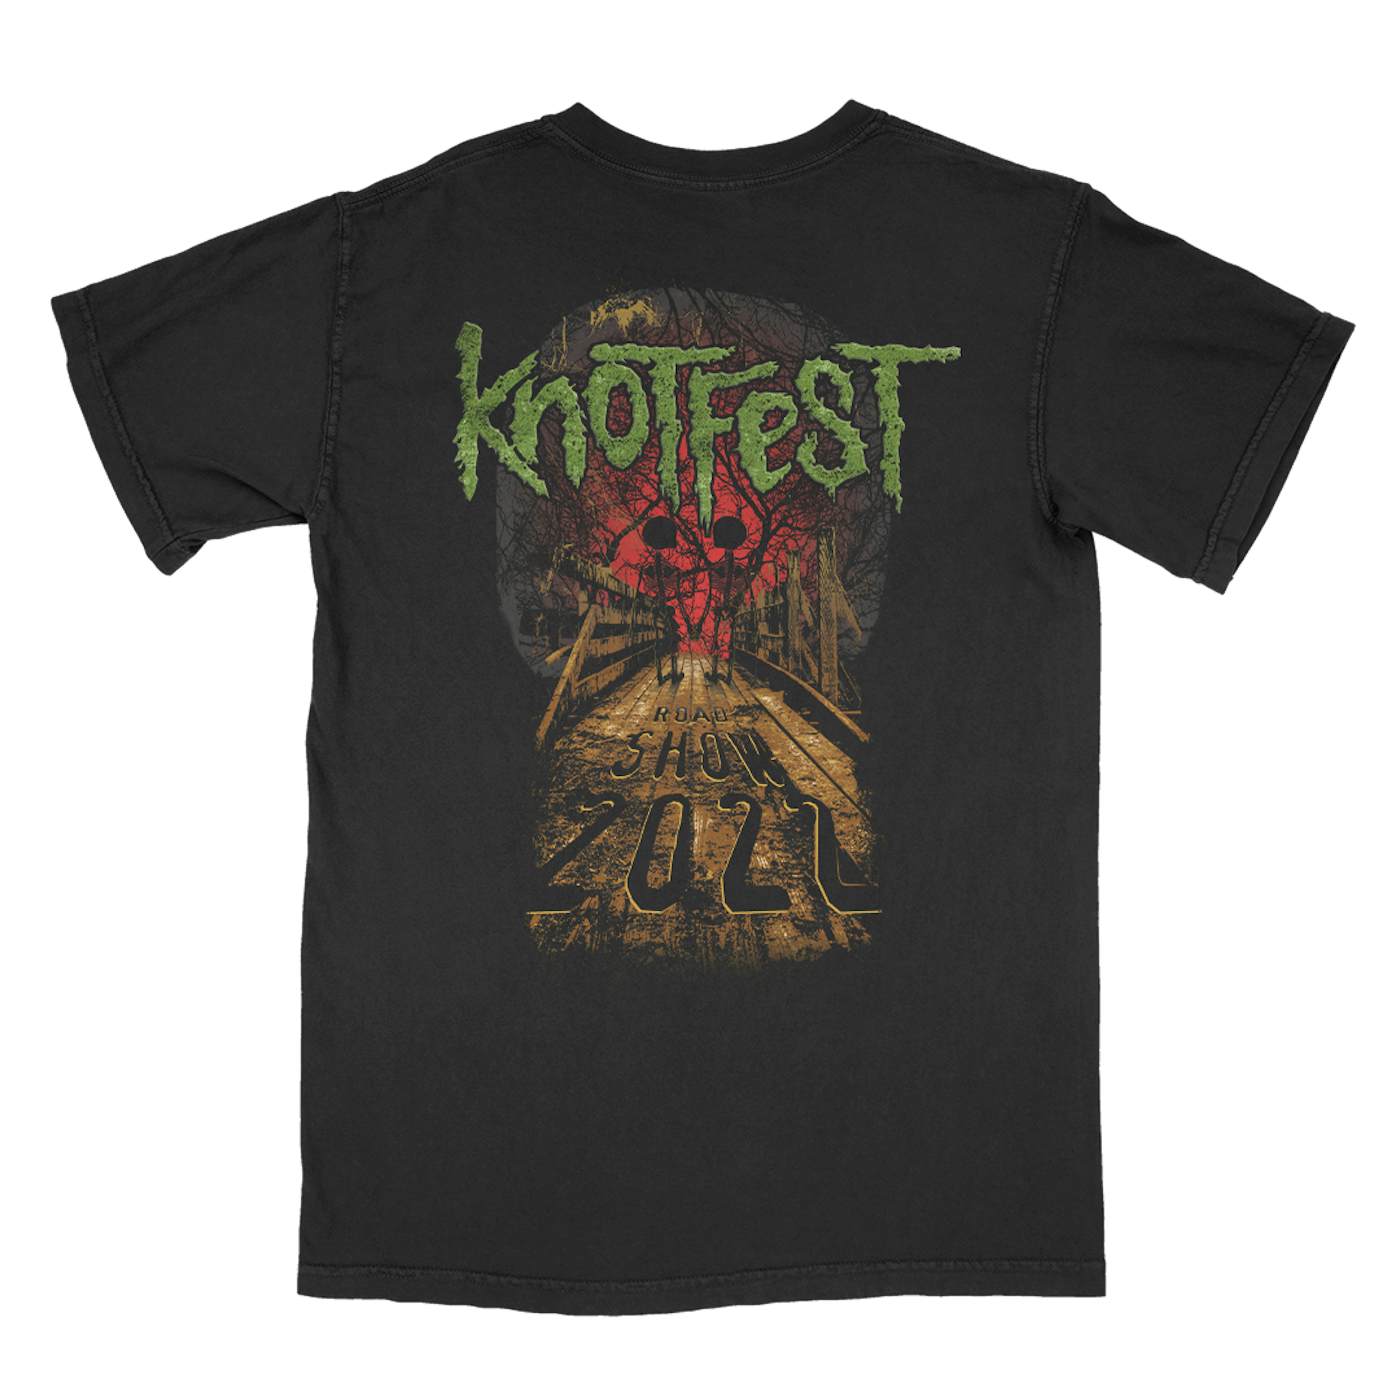 Slipknot Knotfest Leg 3 Skeleton Bridge T-Shirt